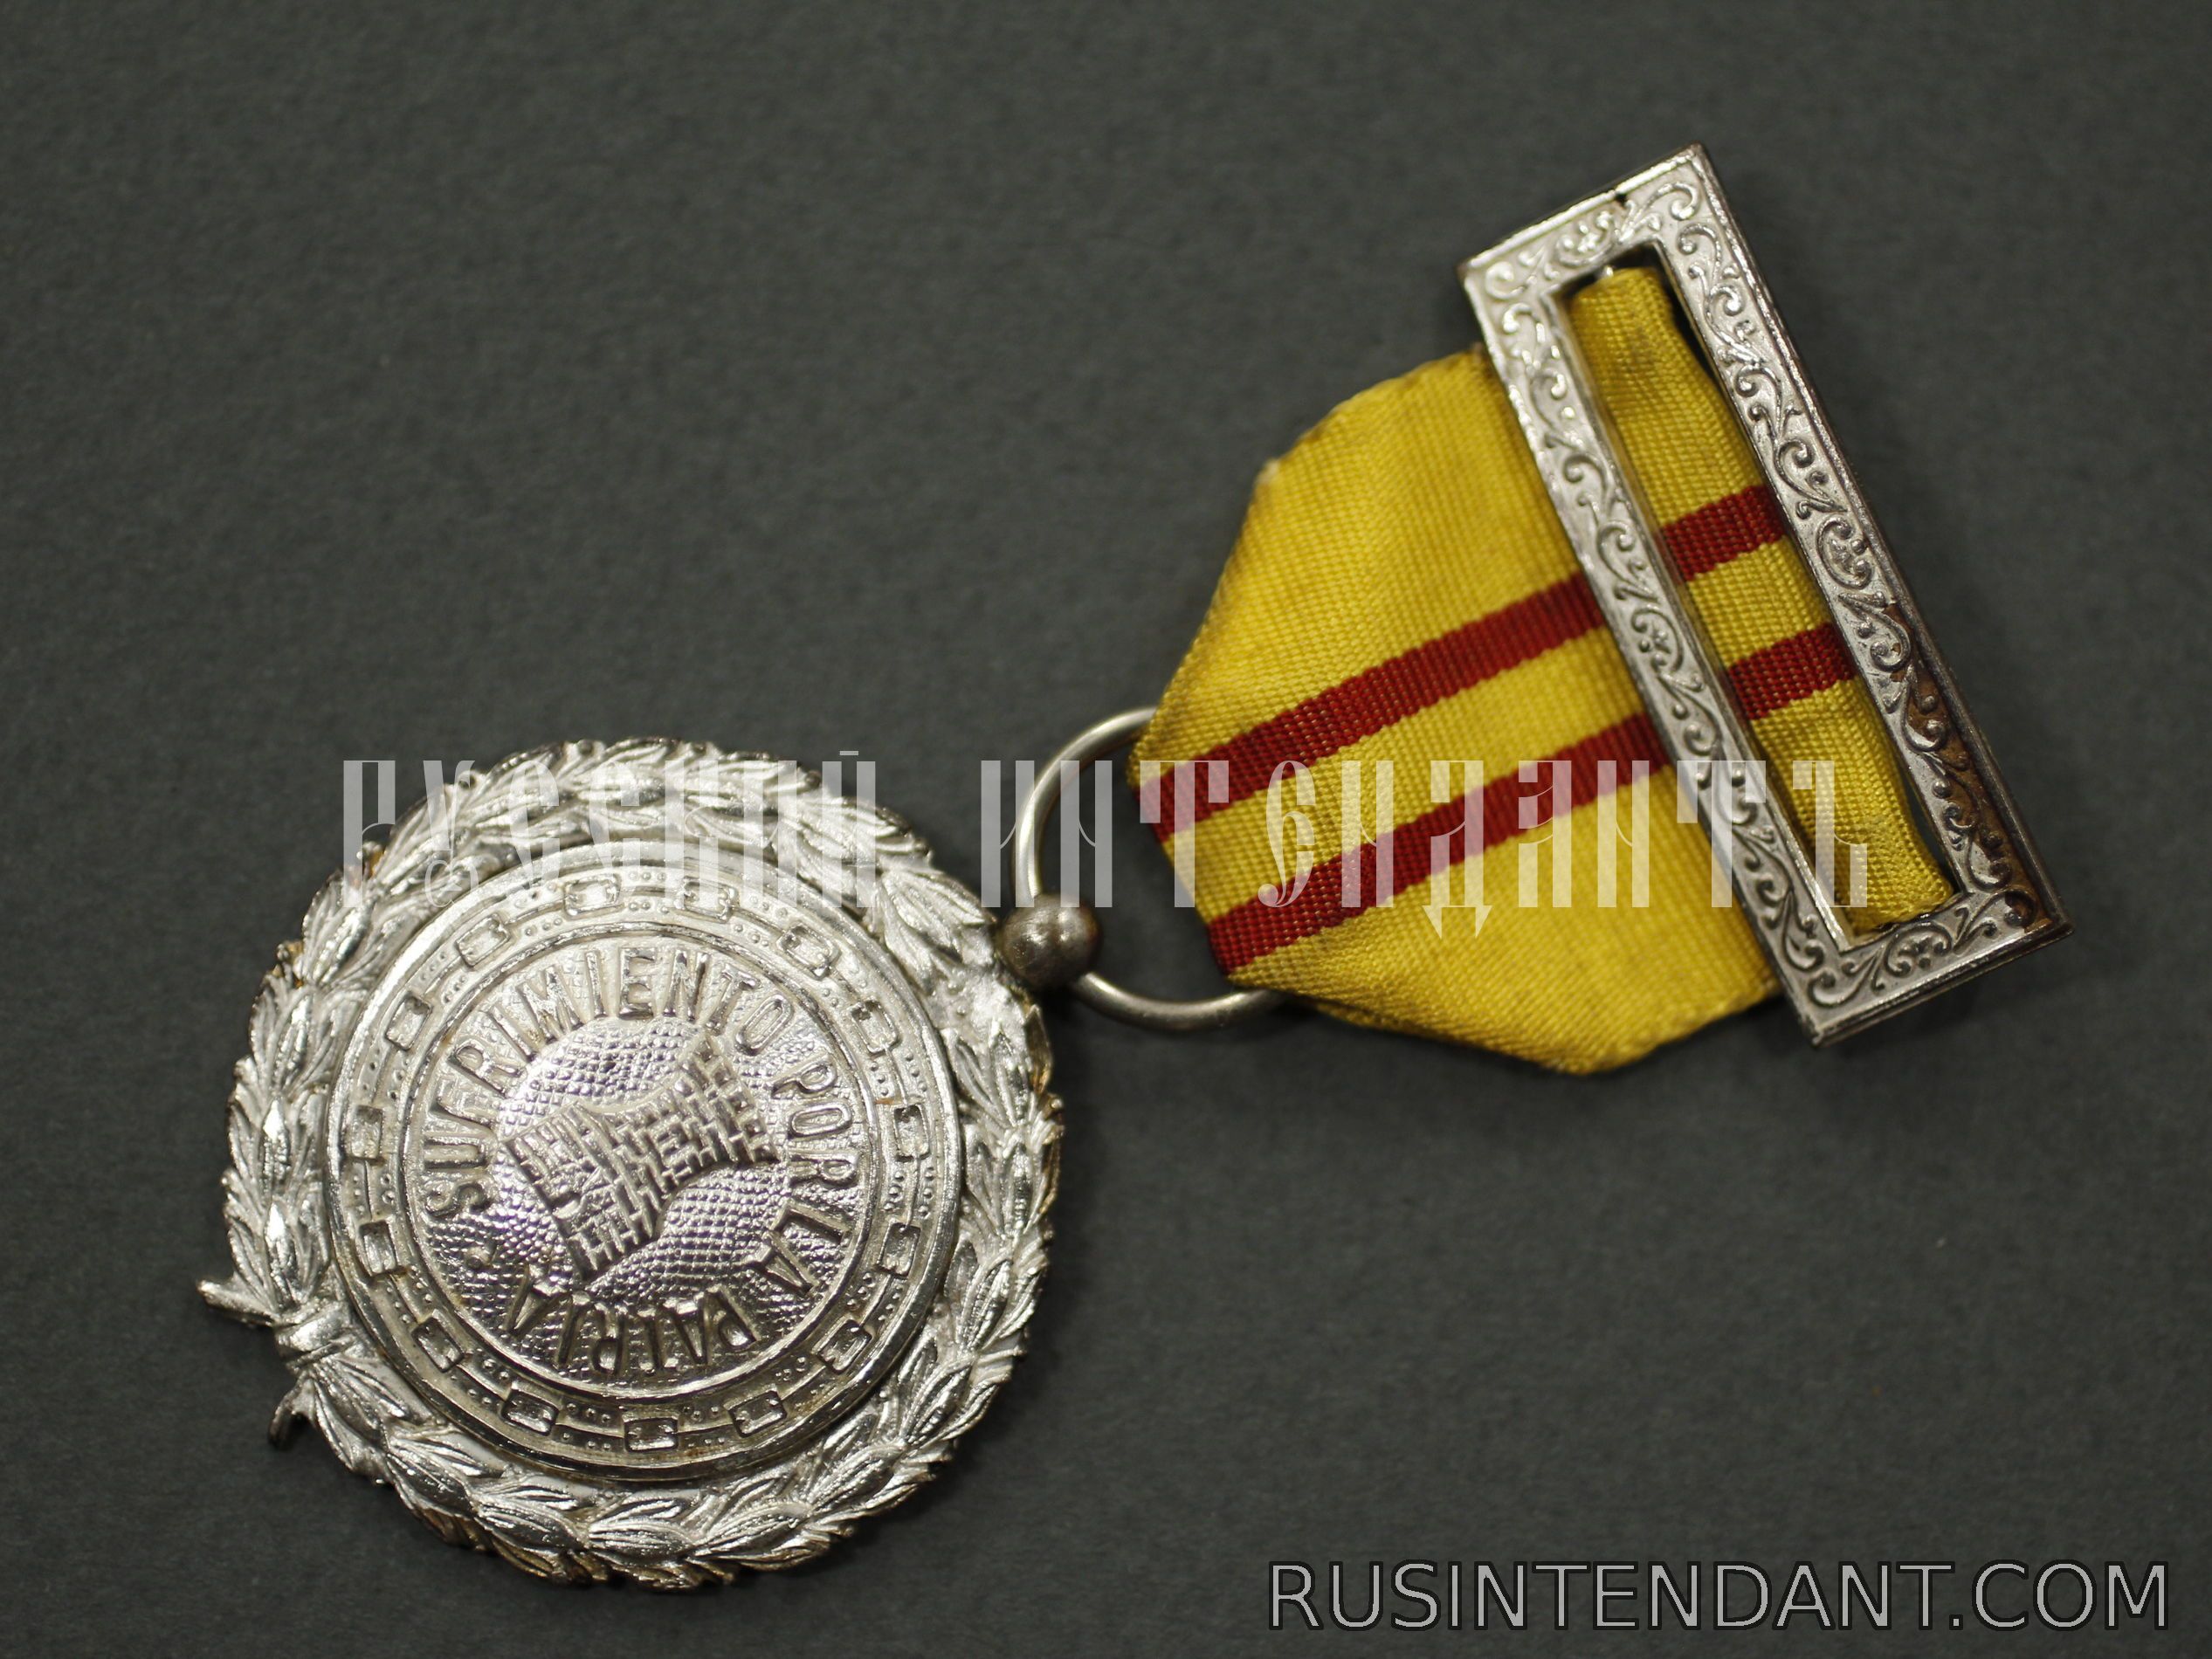 Фото 3: Медаль «Пострадавшему за Отечество» 